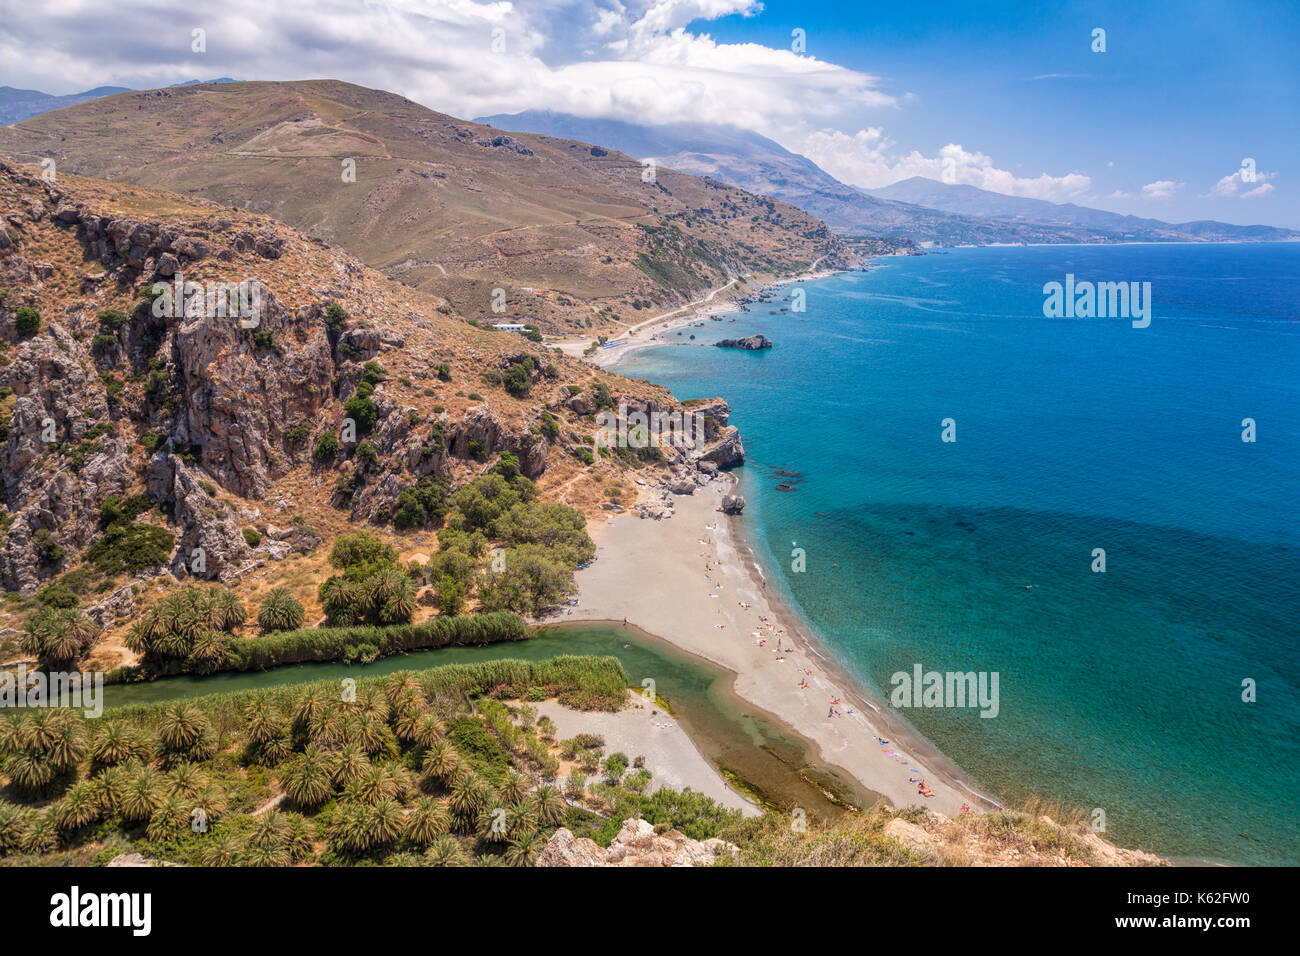 Vue aérienne de la plage de preveli et lagon près de rethymno en Crète, Grèce, méditerranée Banque D'Images